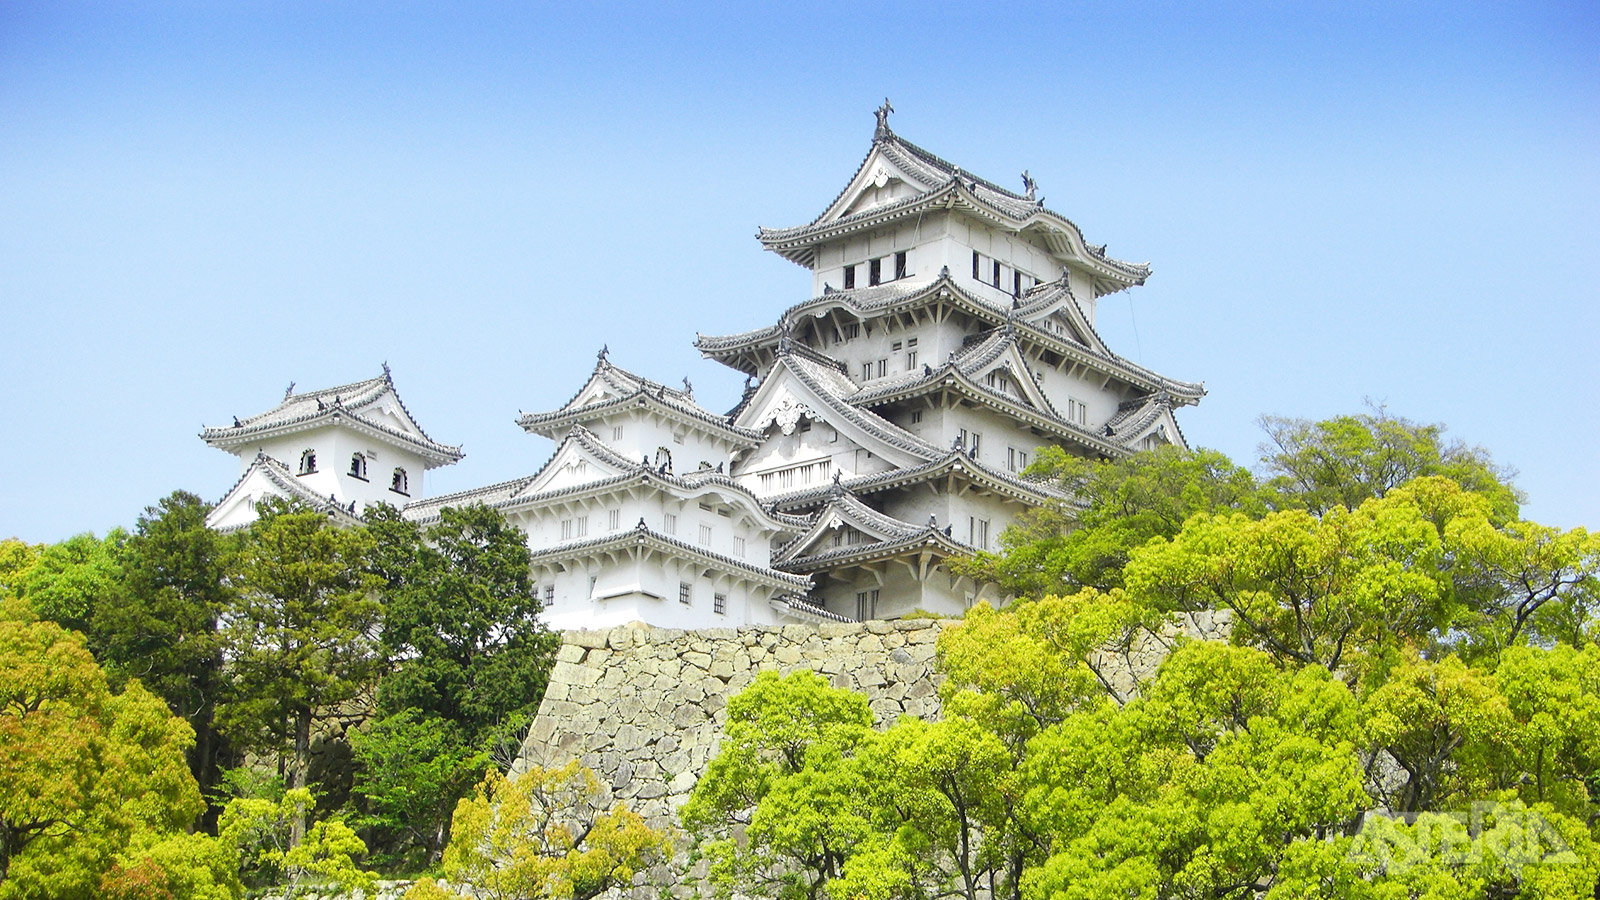 Het Himeji-kasteel, ook bekend als ’White Heron Castle’ vanwege zijn elegante, witte uiterlijk is zowel een nationale schat als werelderfgoed